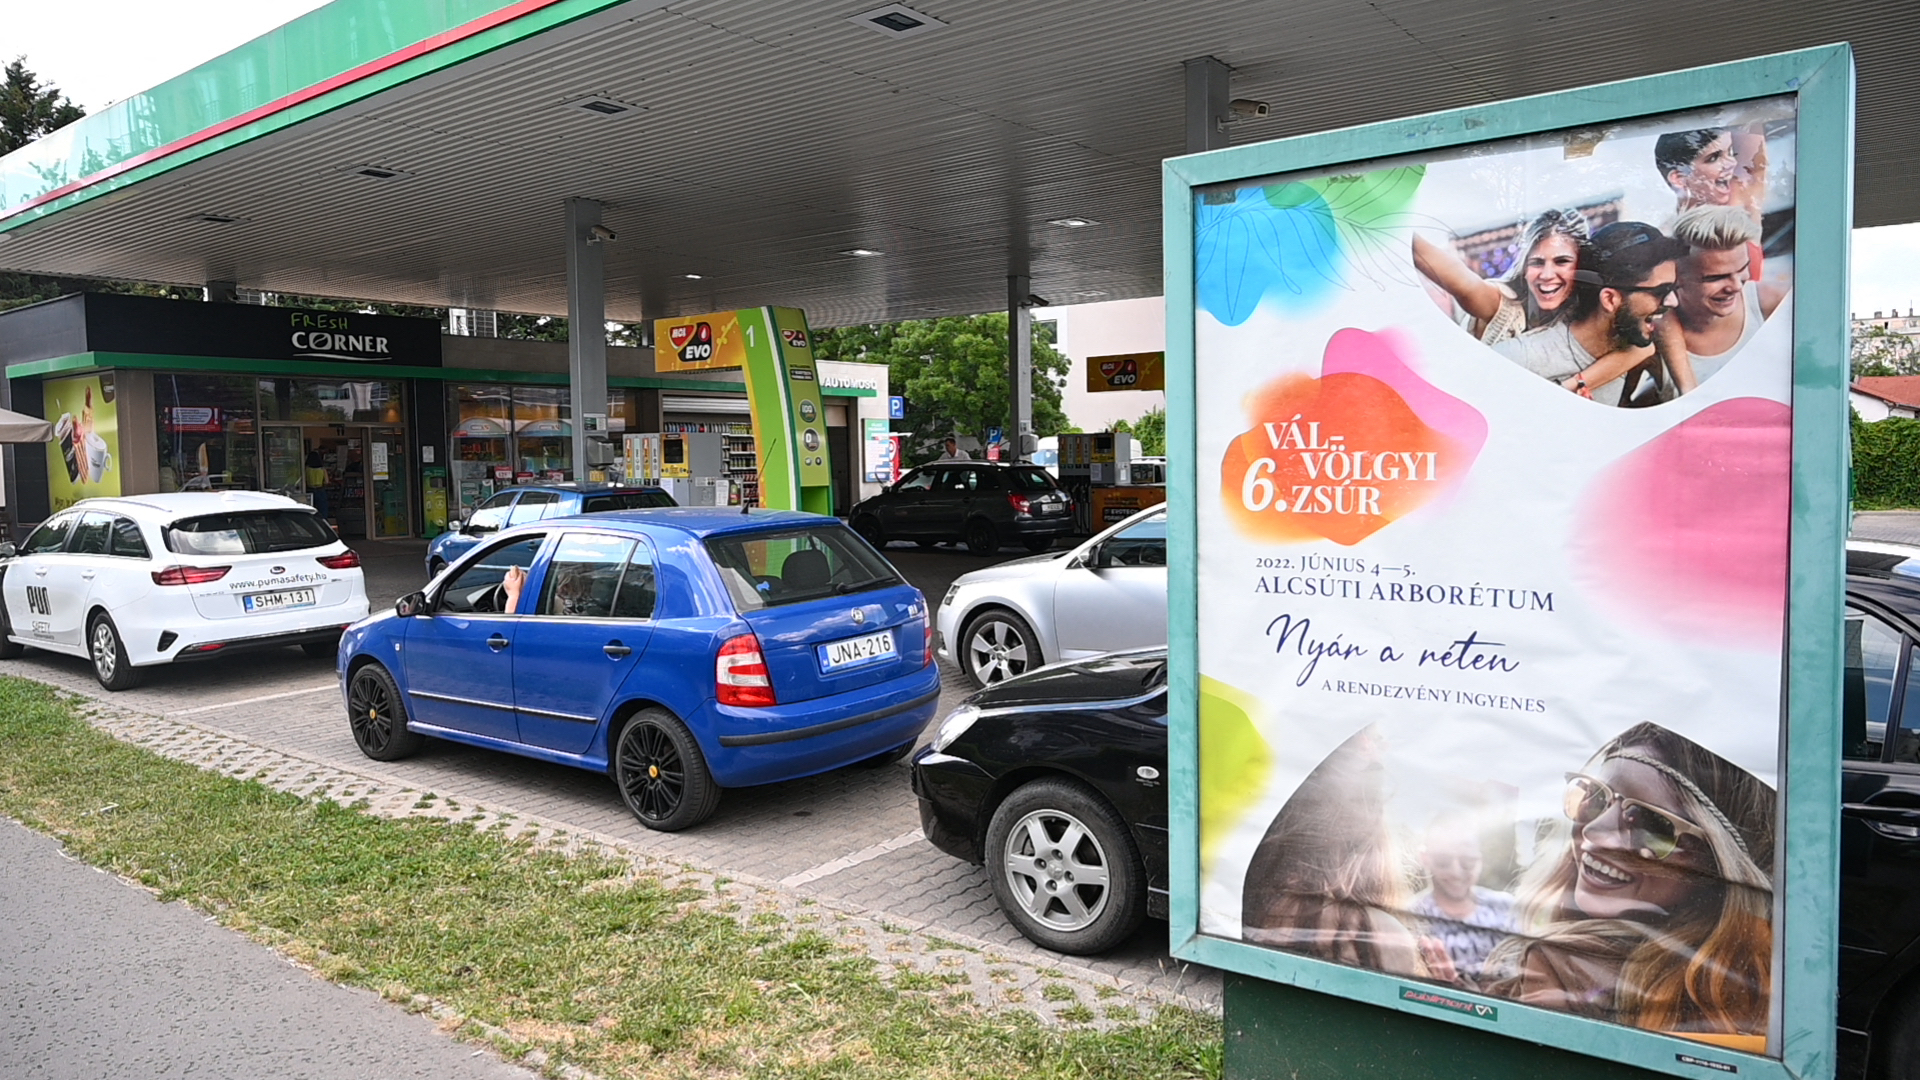 Los autos hacen fila en una gasolinera en Budapest, Hungría, el 27 de mayo, donde los autos con matrícula húngara pueden comprar combustible a precios limitados por el gobierno, mientras que los autos con matrícula extranjera pagan precios de mercado. 